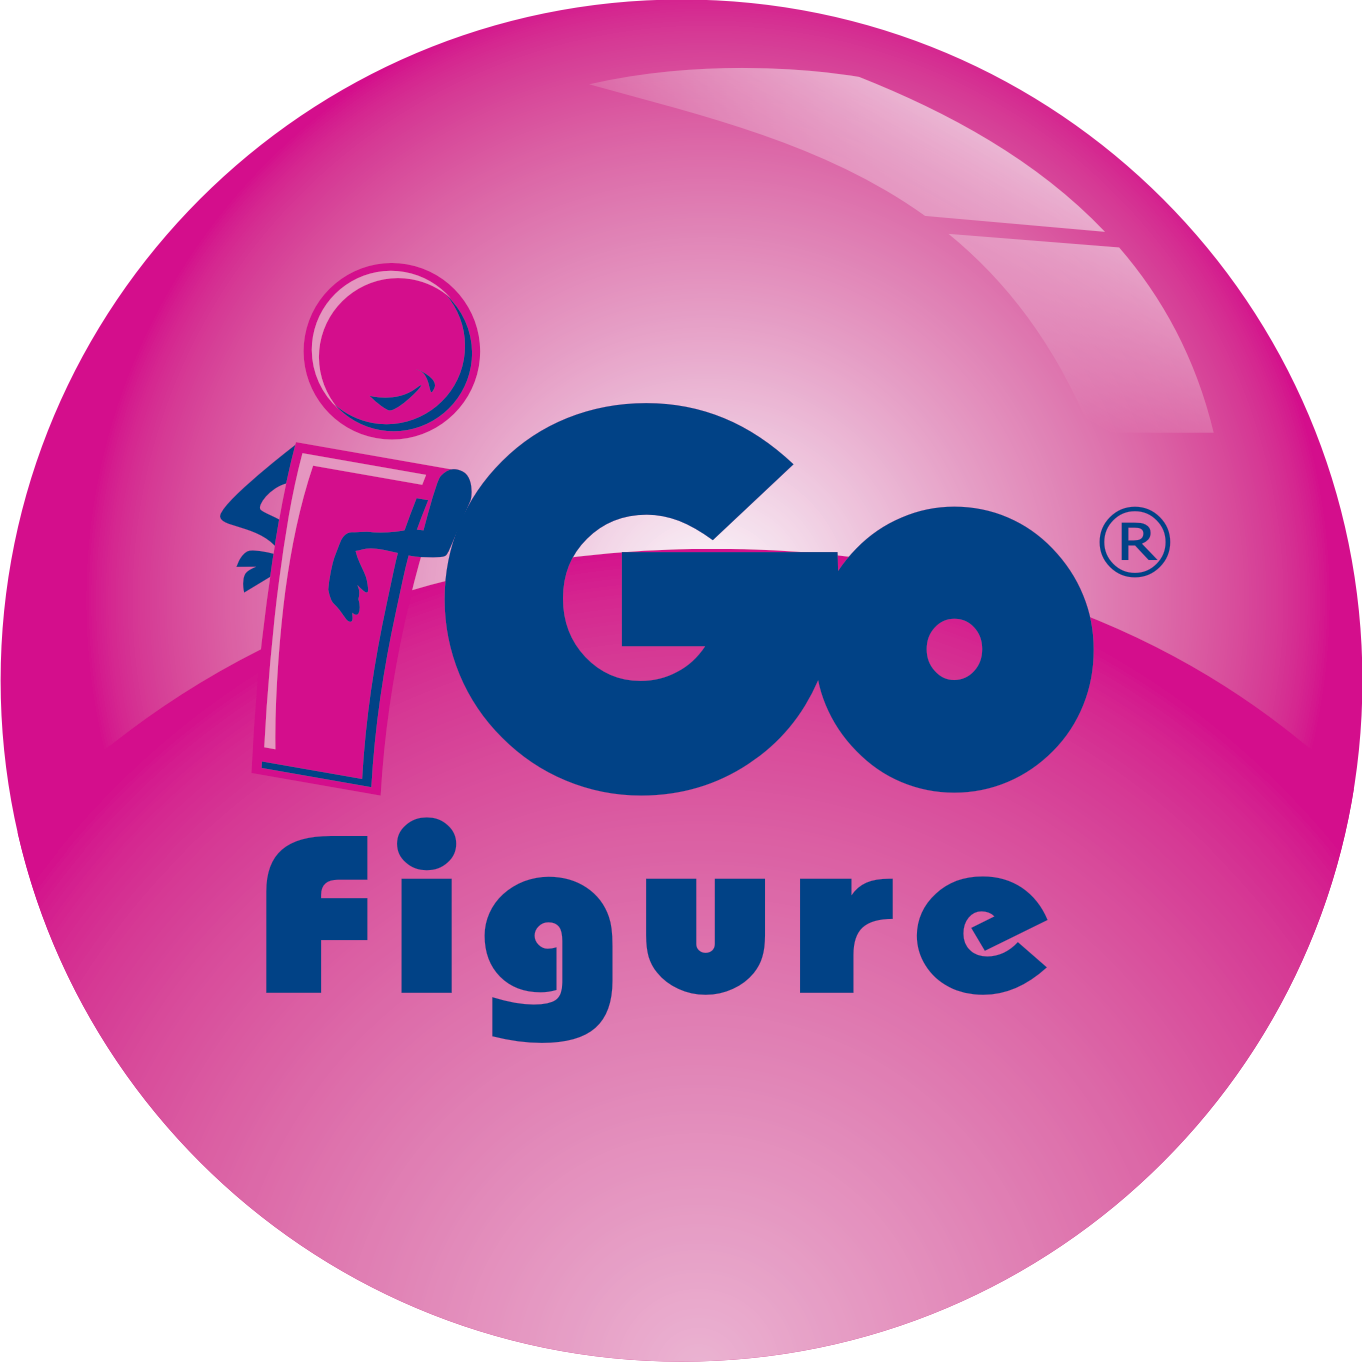 iGo Figure | Fitness Club Management Software